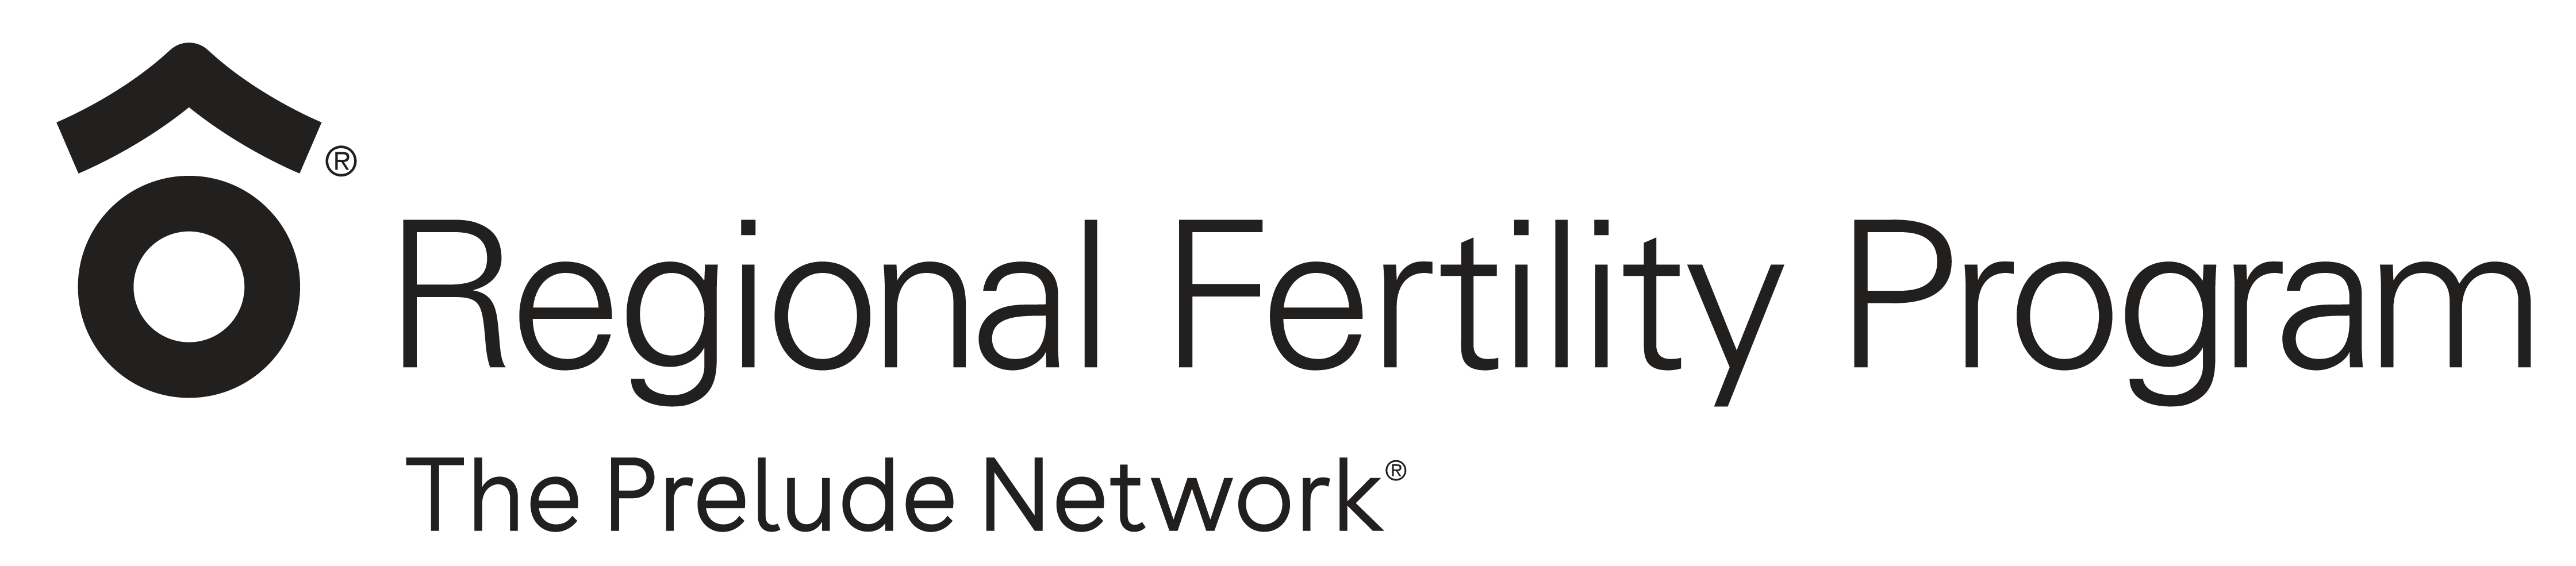 Regional Fertility